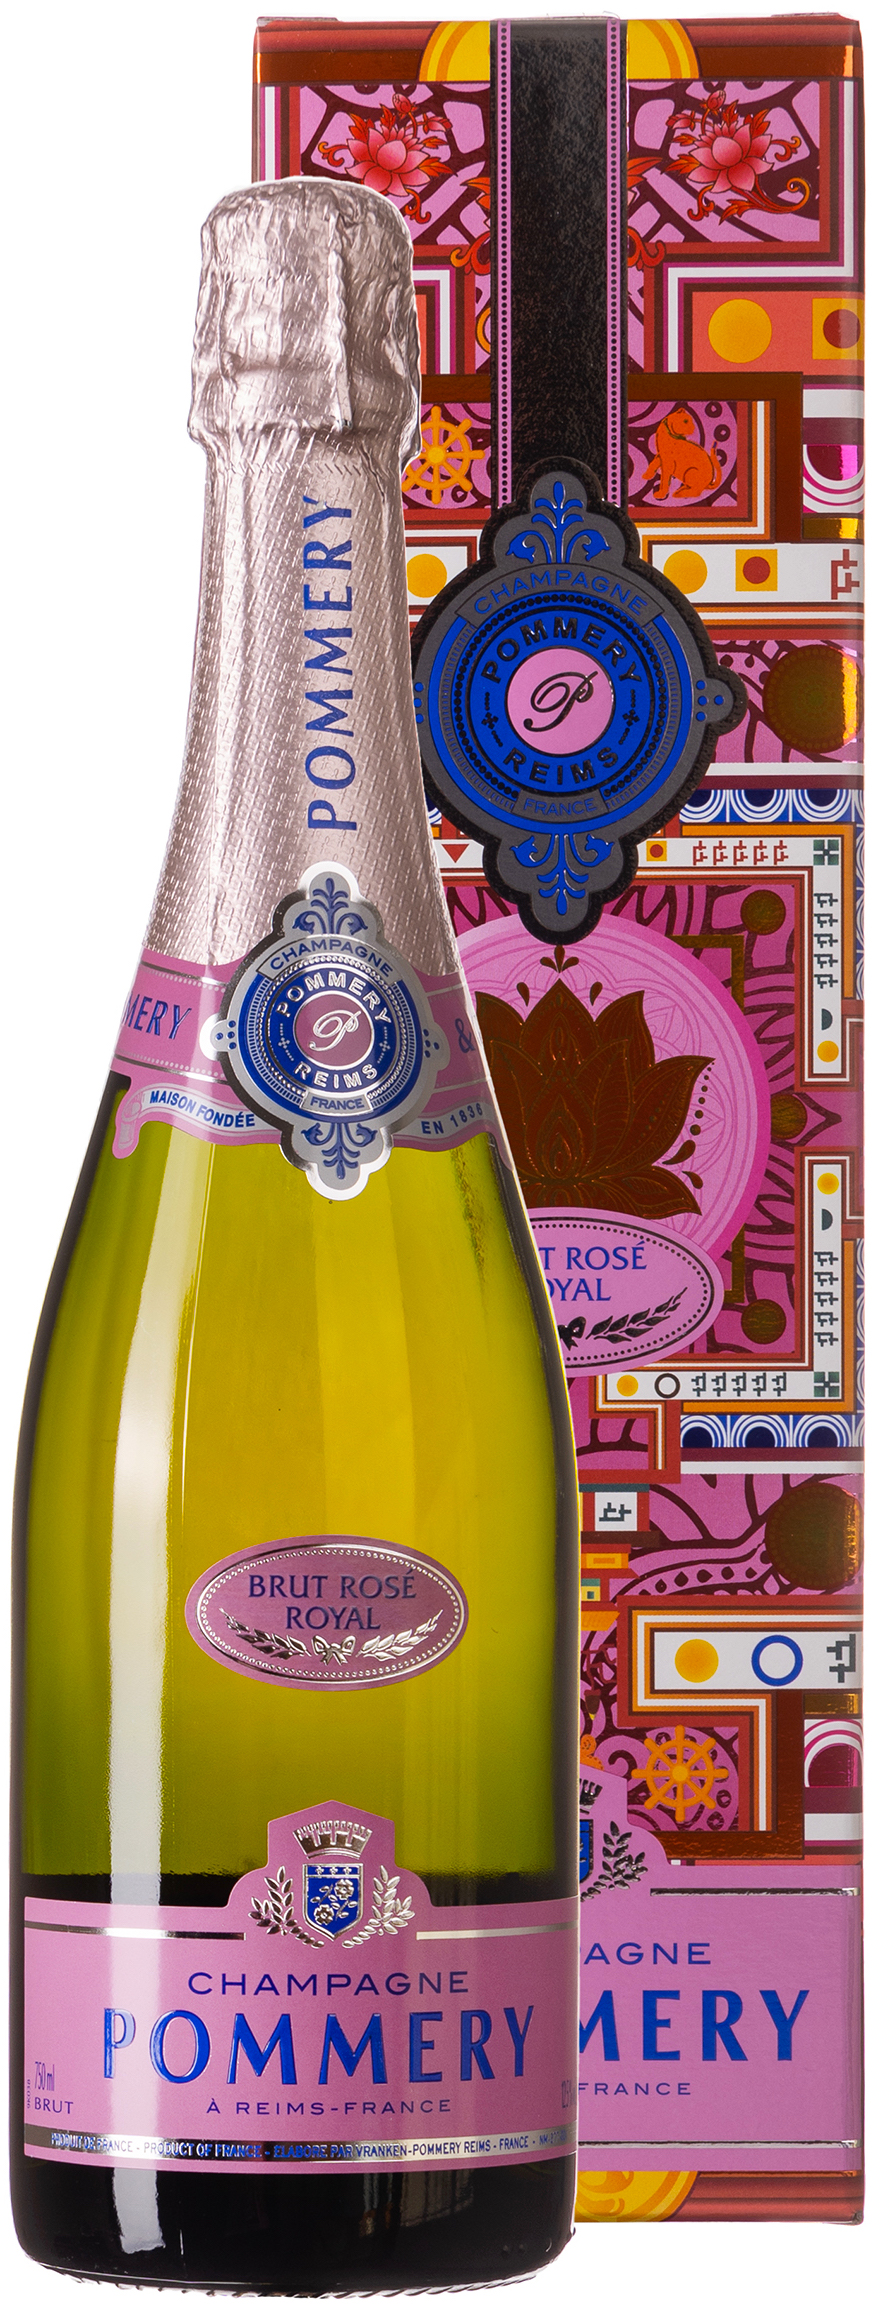 Pommery Brut Rosé 12,5% 0,75L Royal Champagner vol. 702812 